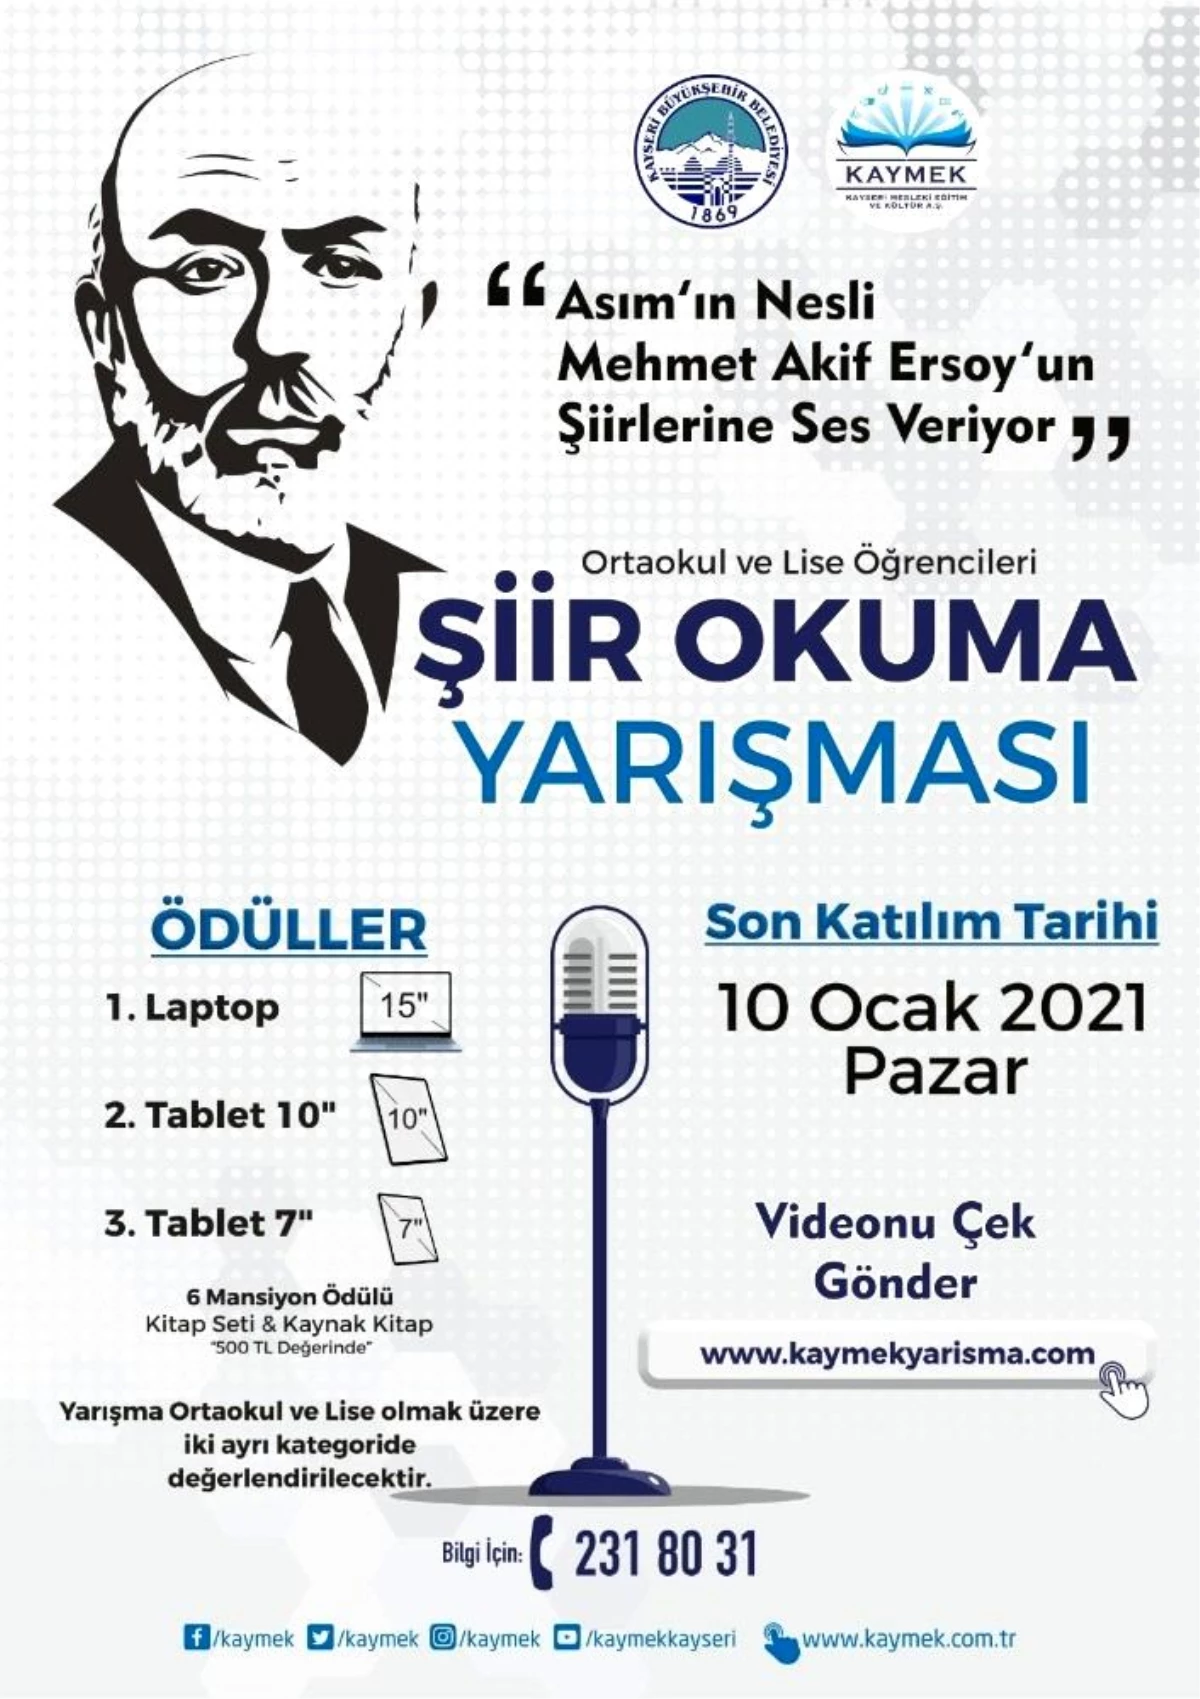 Kayseri Büyükşehir Belediyesinin sanal şiir yarışmasına yoğun ilgi